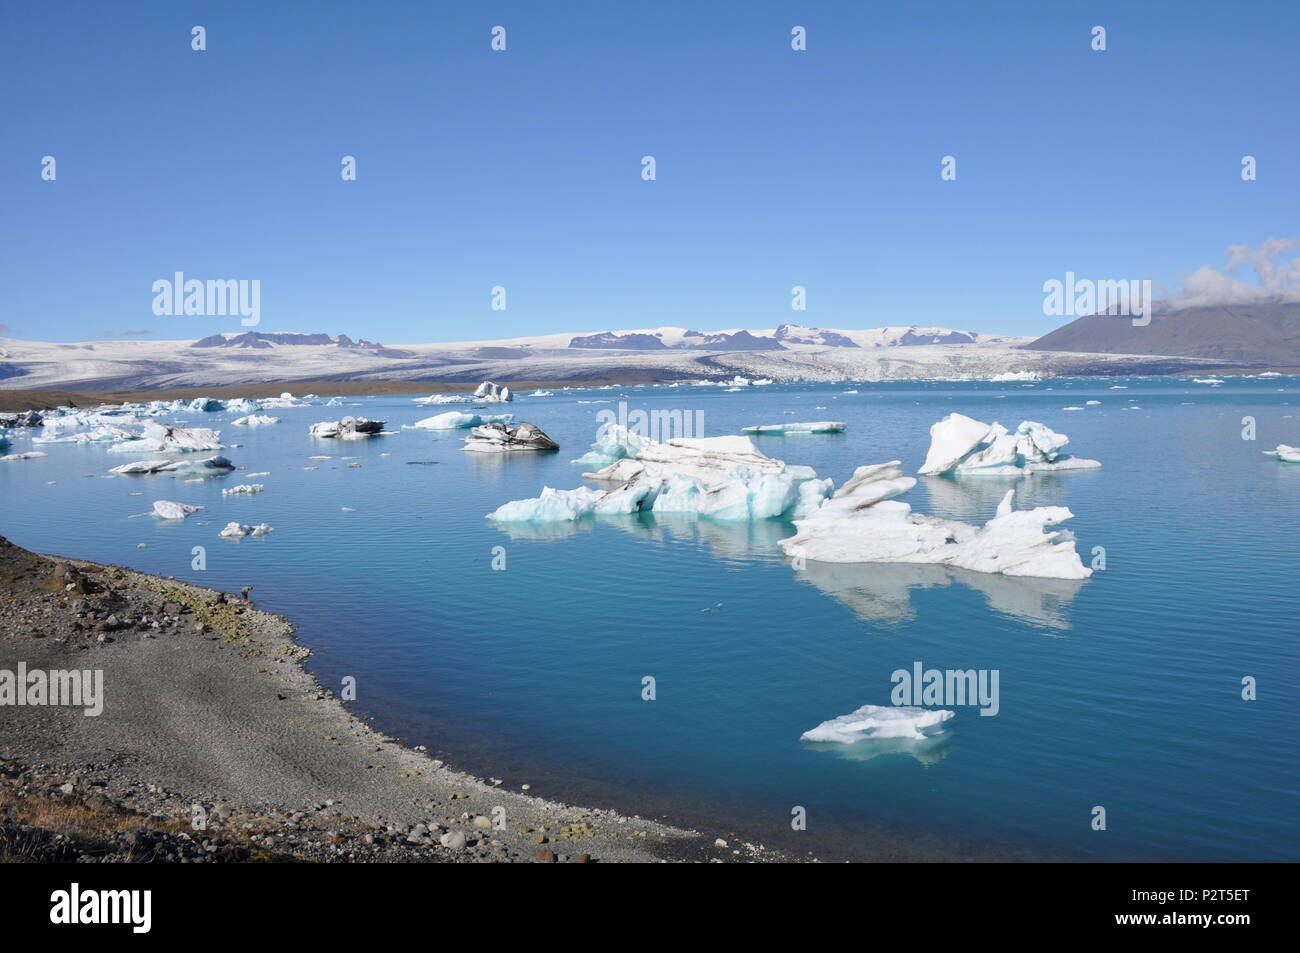 - Le lac glaciaire Jökulsárlón, Islande Banque D'Images